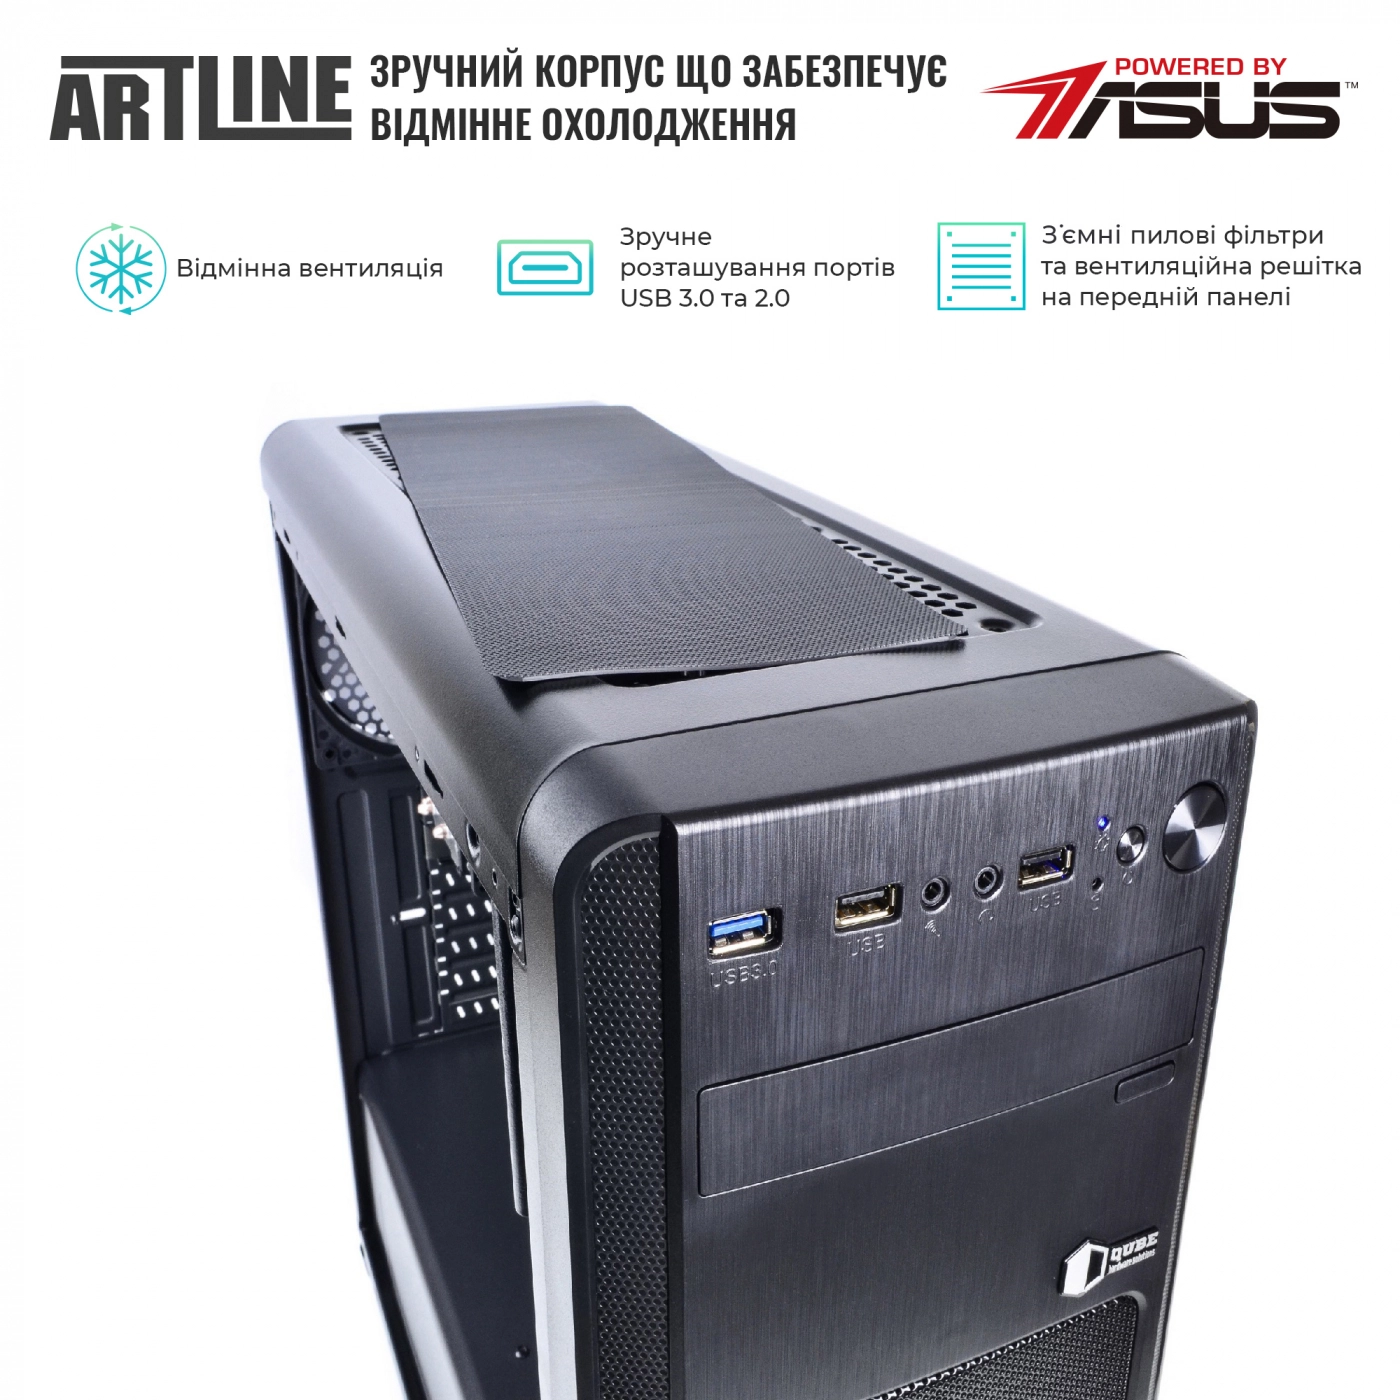 Купить Сервер ARTLINE Business T13v14 - фото 2